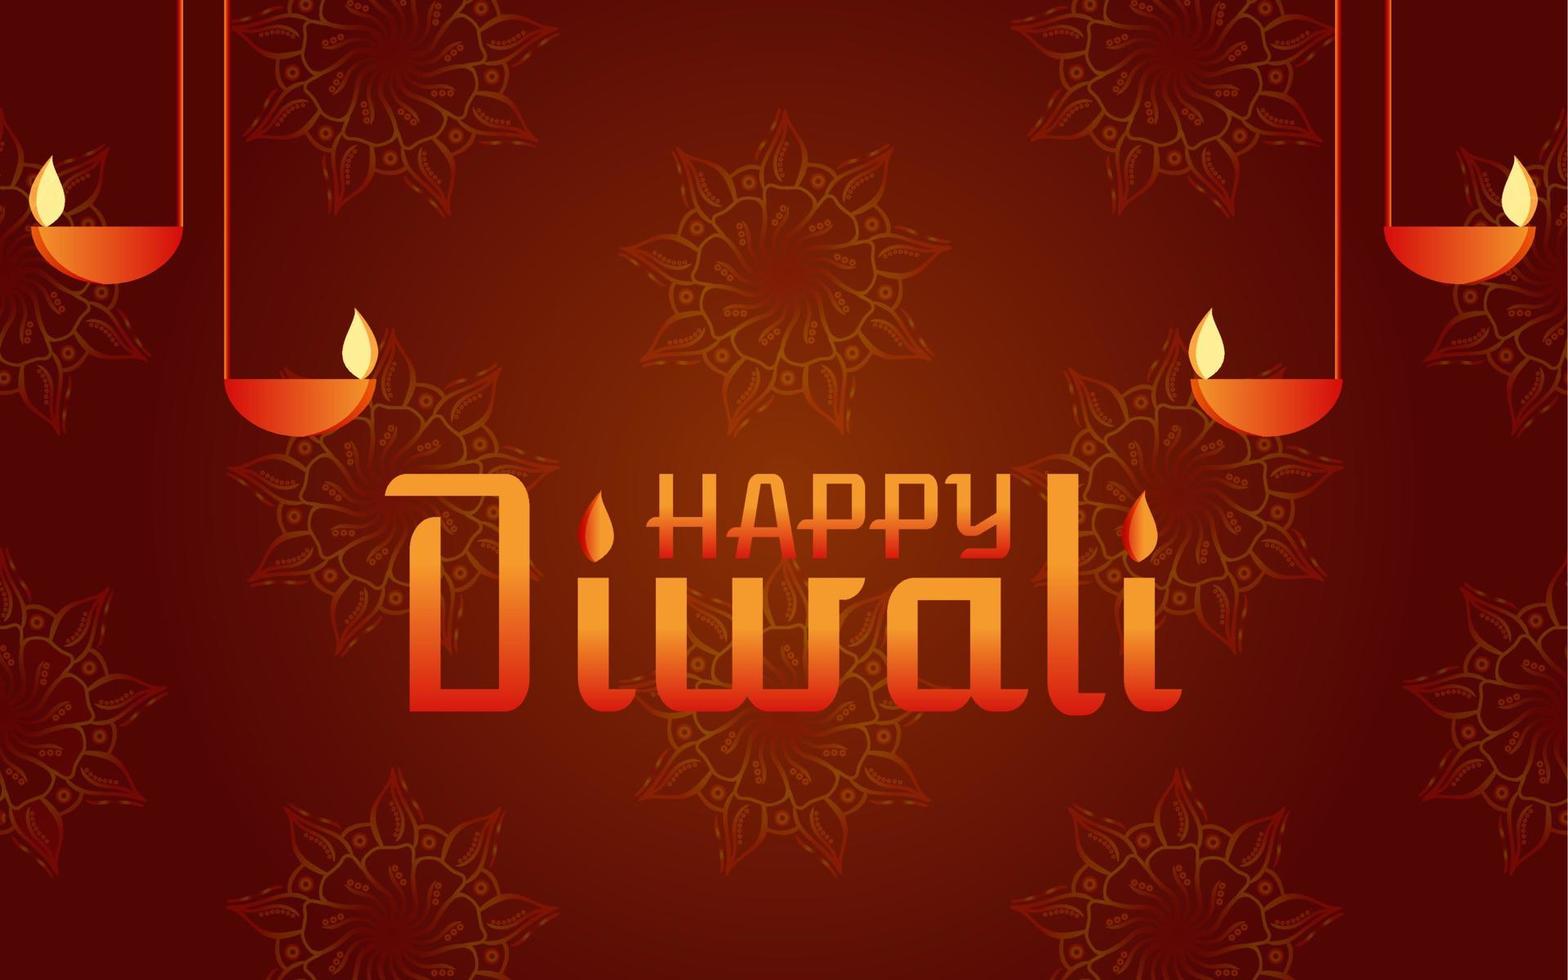 illustrazione vettoriale di diwali felice, illustrazione di banner vettoriale di diwali felice con diya - lampada a olio, illustrazione di diwali con tipografia, disegno vettoriale di diwali creativo per biglietto di auguri e sfondo.